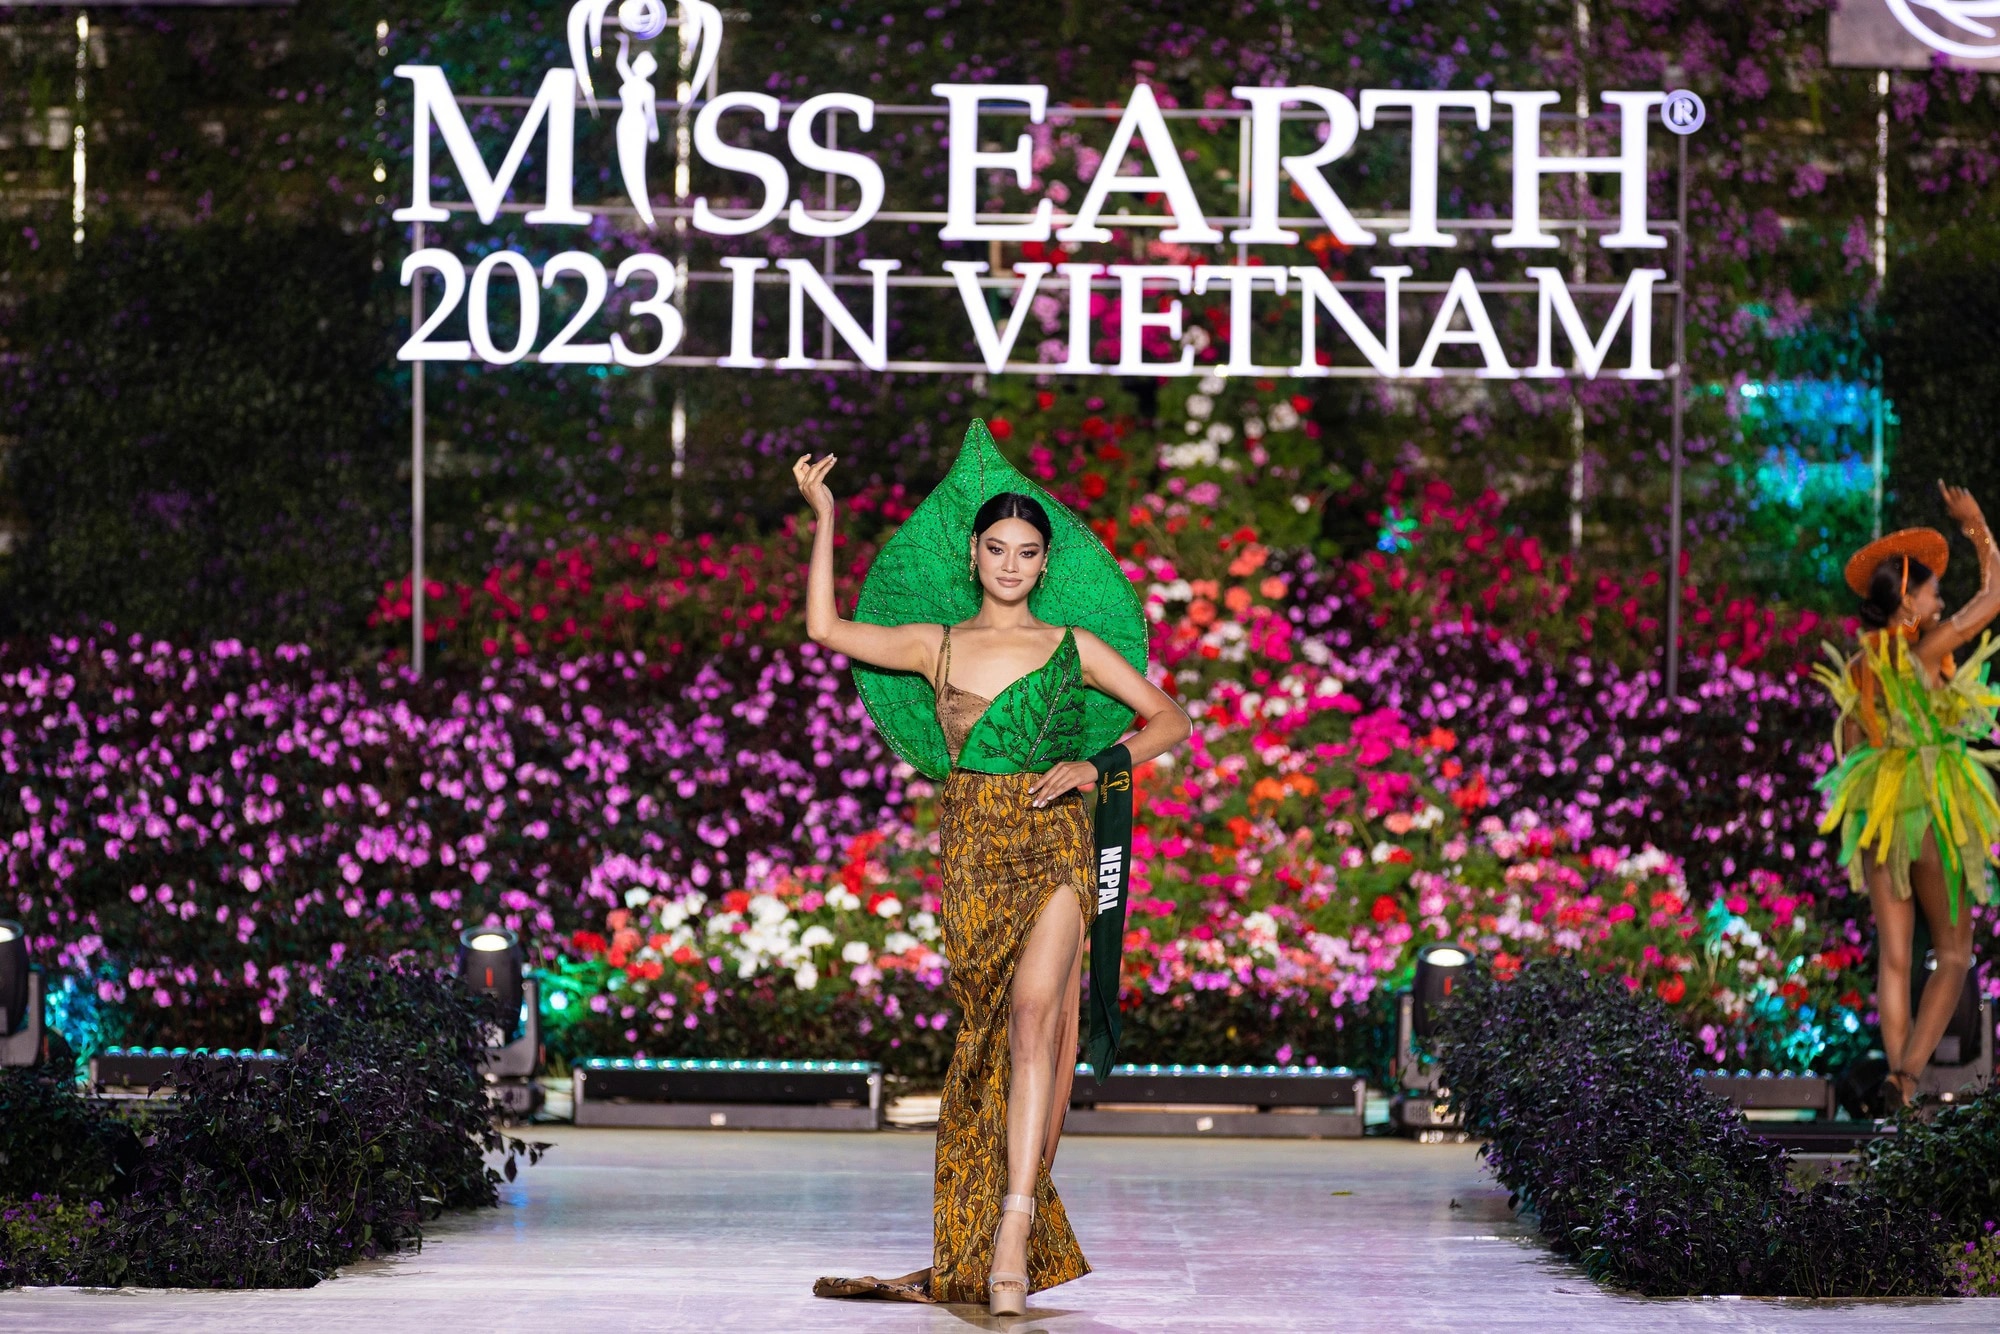 Bán kết Miss Earth 2023 màn trình Trang phục Dân tộc bùng nổ hình ảnh cỏ hoa, muông thú - Ảnh 16.